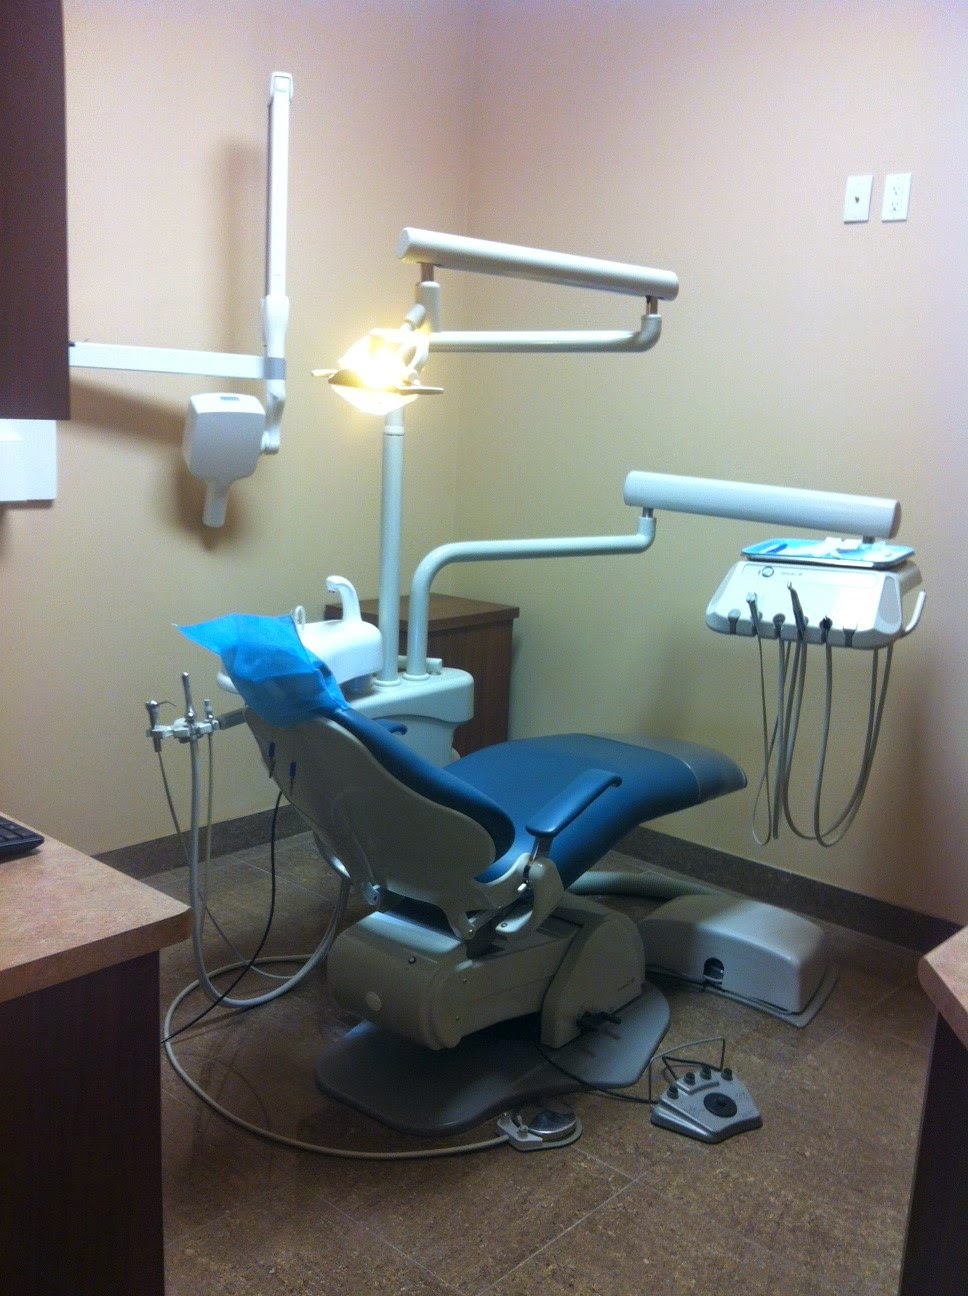 Carlton Dental | dentist | 145 Carlton St, St. Catharines, ON L2R 1R5, Canada | 9059846000 OR +1 905-984-6000